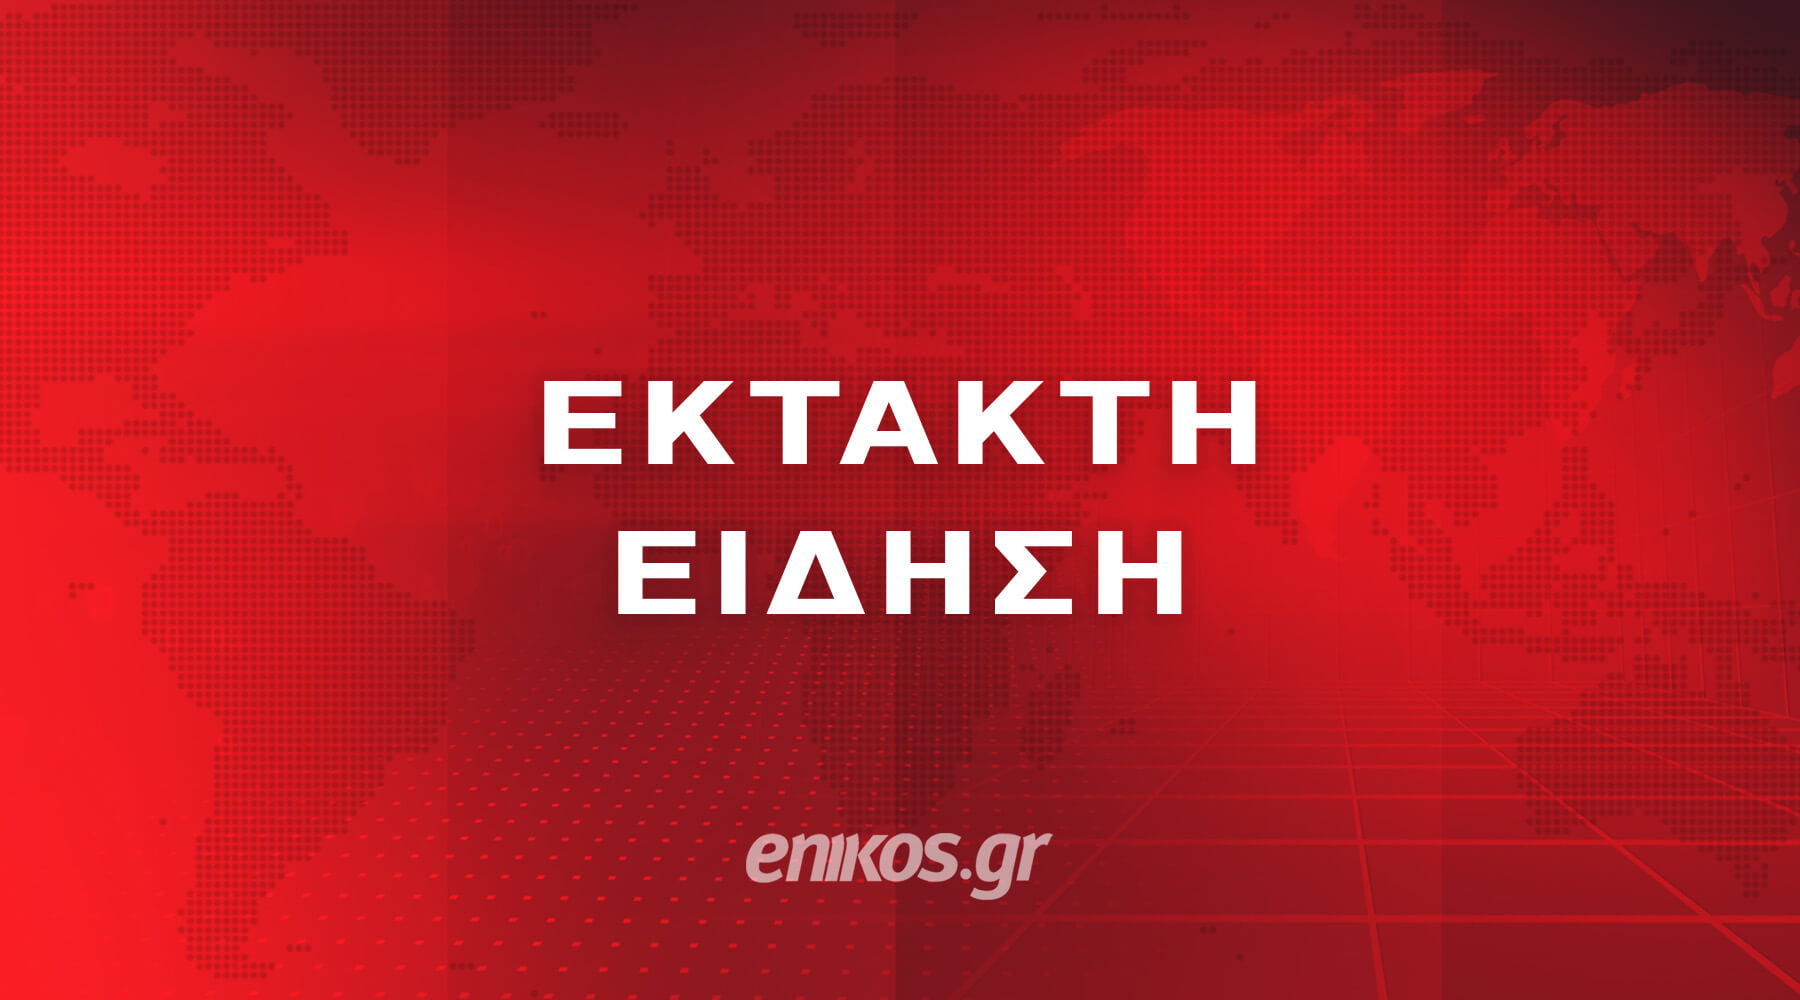 ΕΚΤΑΚΤΗ ΕΙΔΗΣΗ - enikos.gr